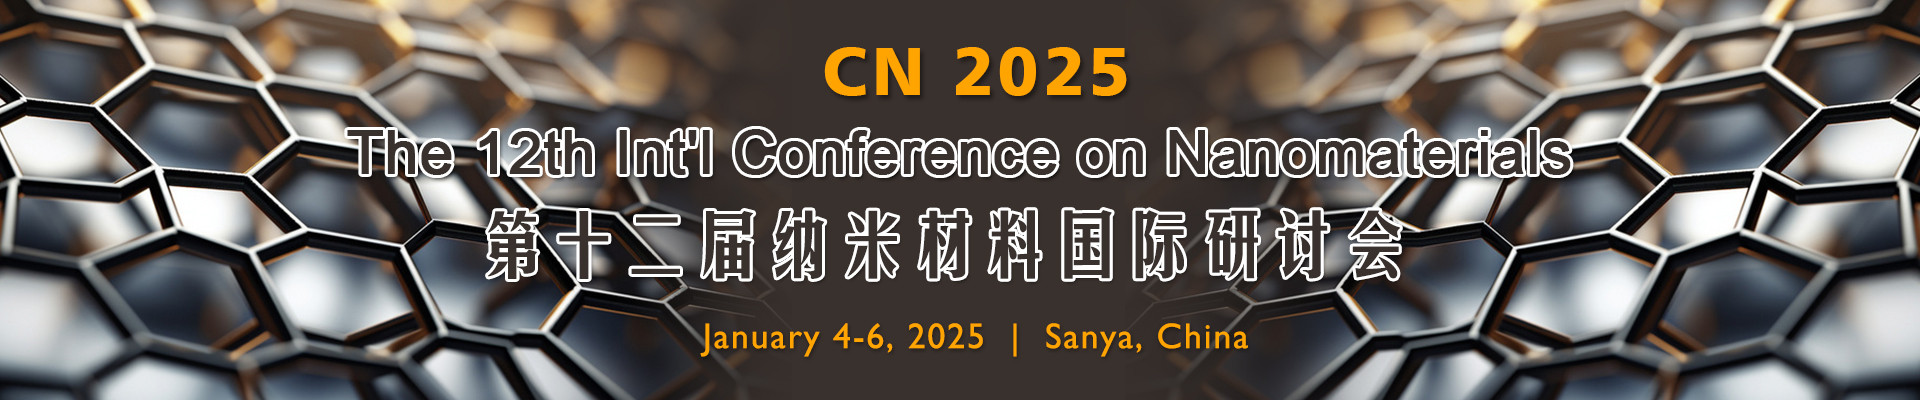 第十二届纳米材料国际研讨会(CN 2025)